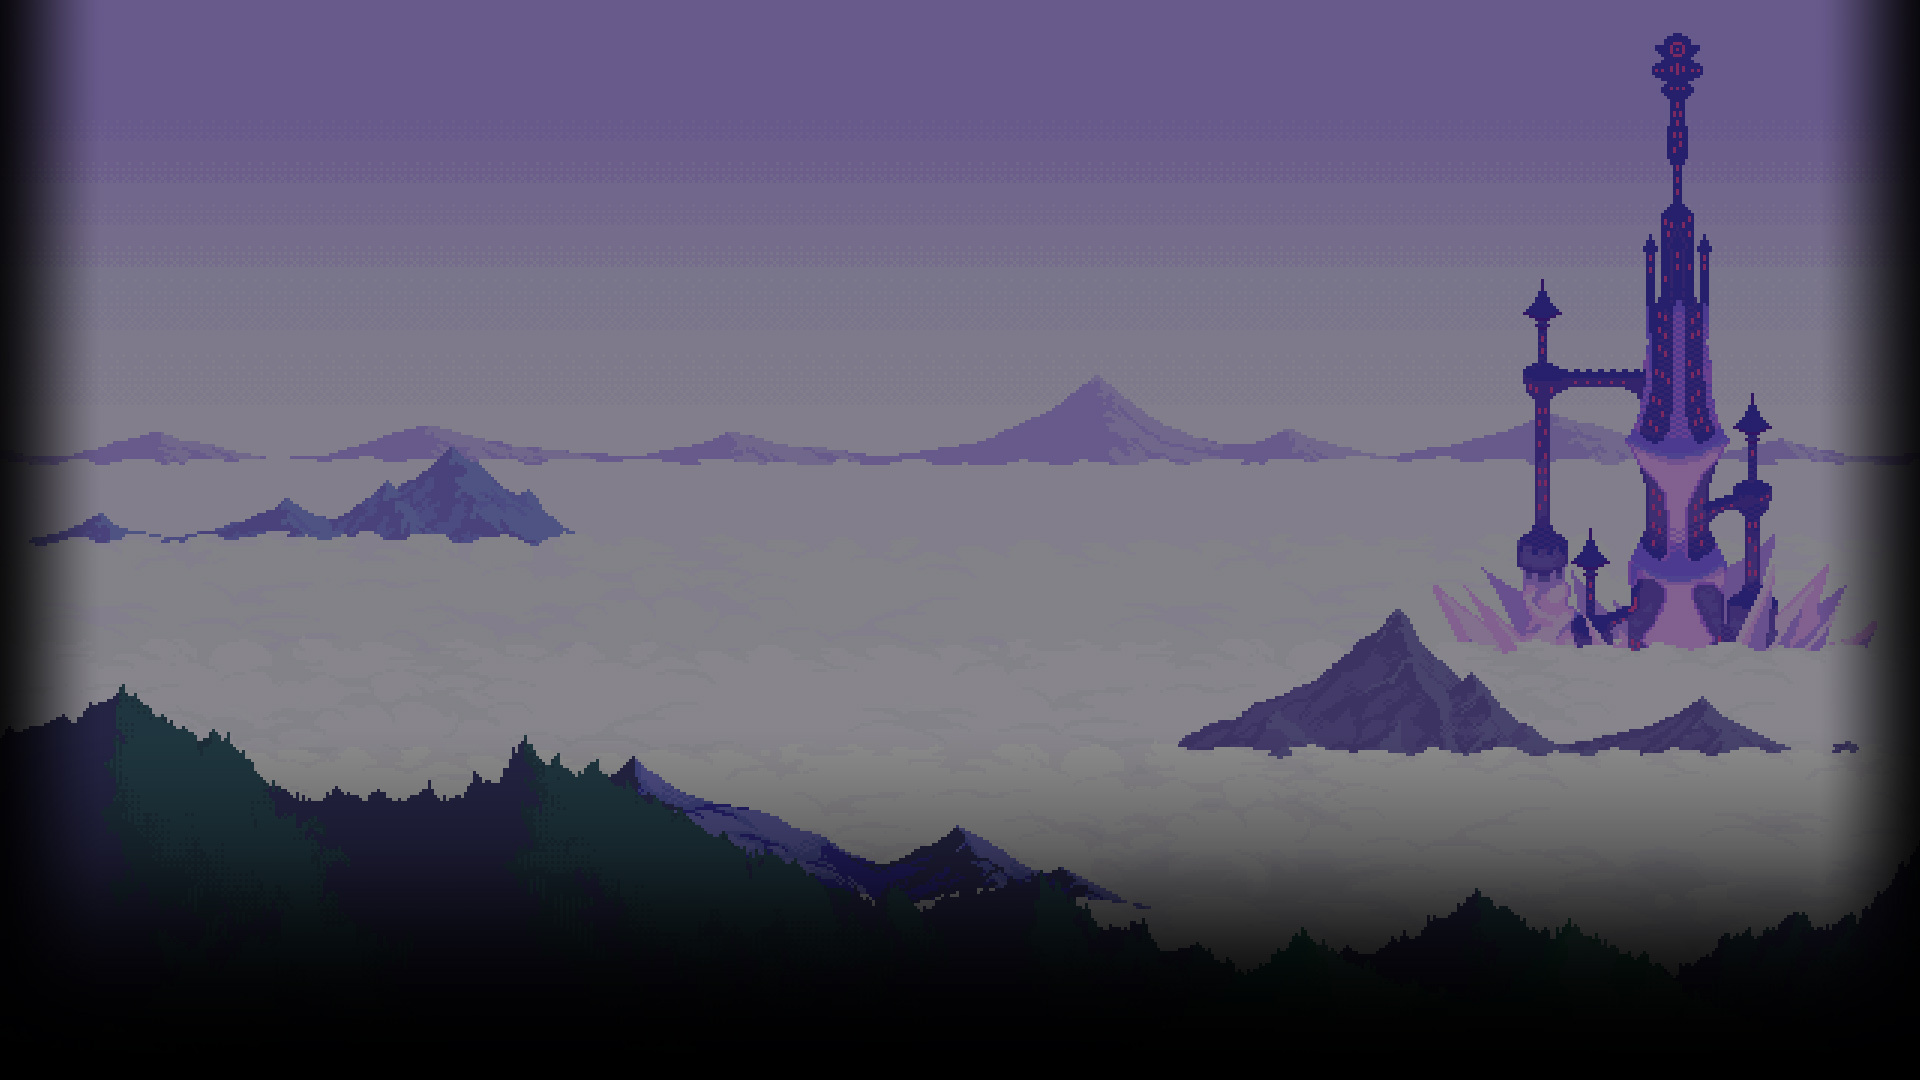 Sky Tower Mountains Clouds Plants Gradient Digital Art Pixelated Landscape Vignette Nature 1920x1080